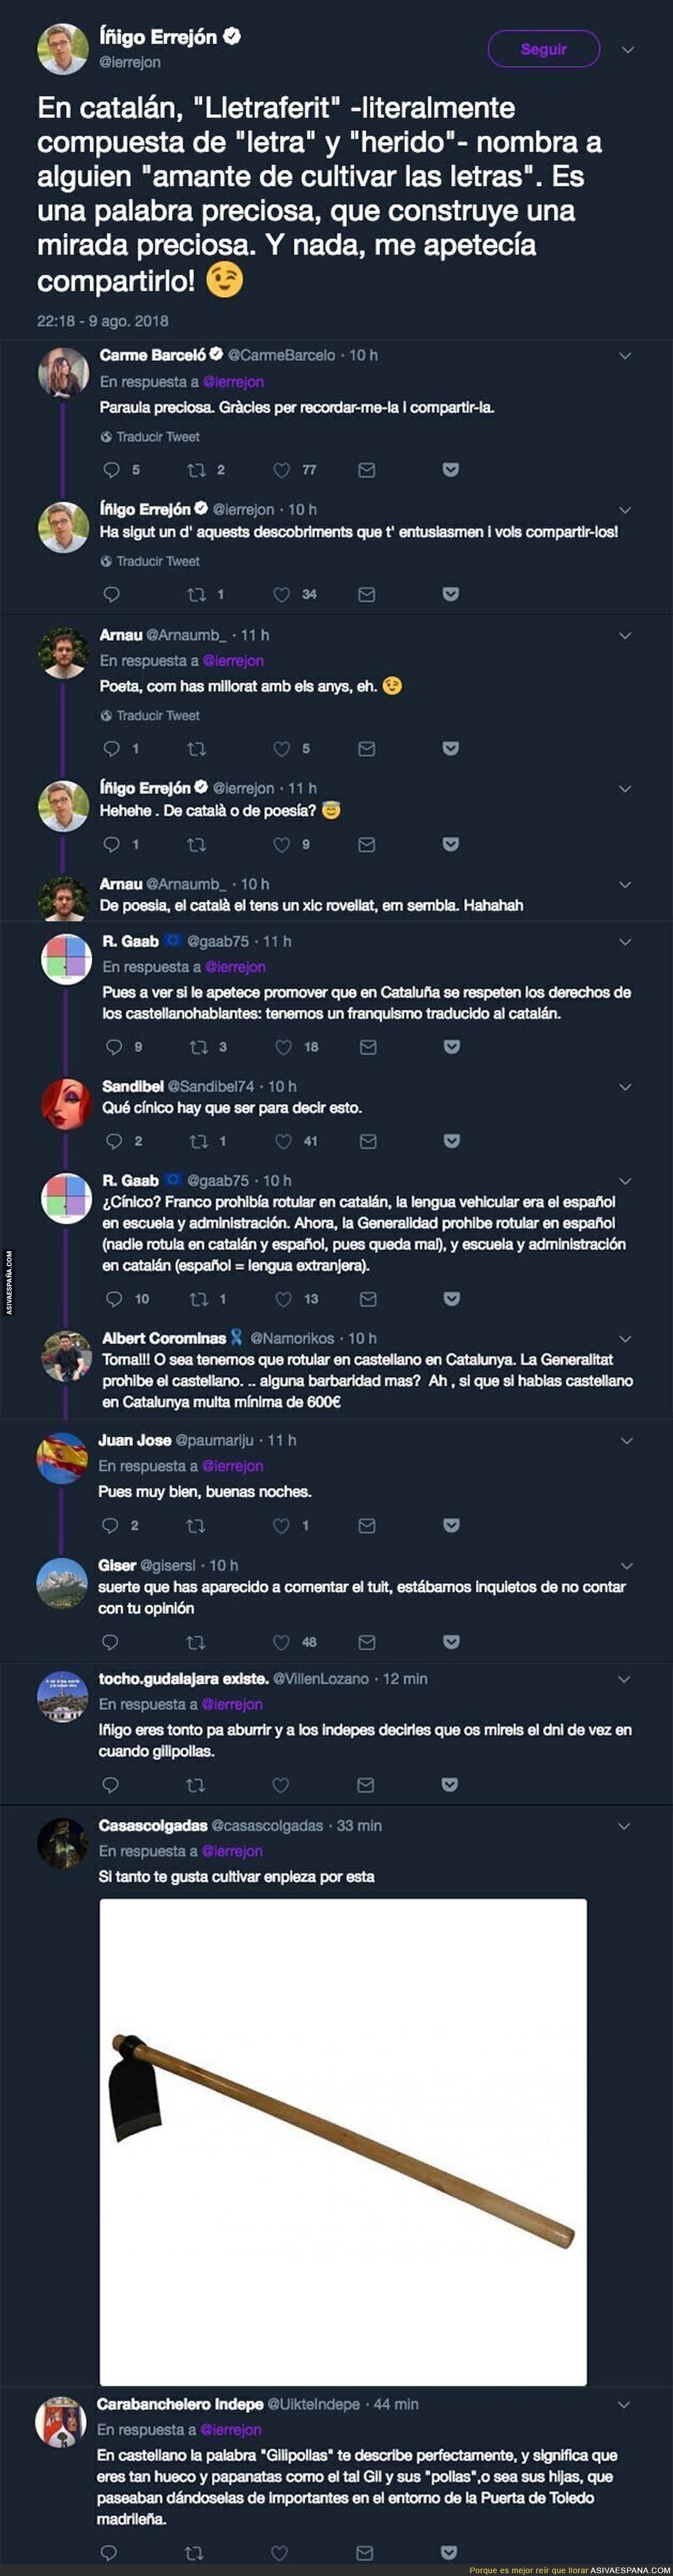 Íñigo Errejón tuitea -y explica- una palabra en catalán y no tardan en salir los indignados